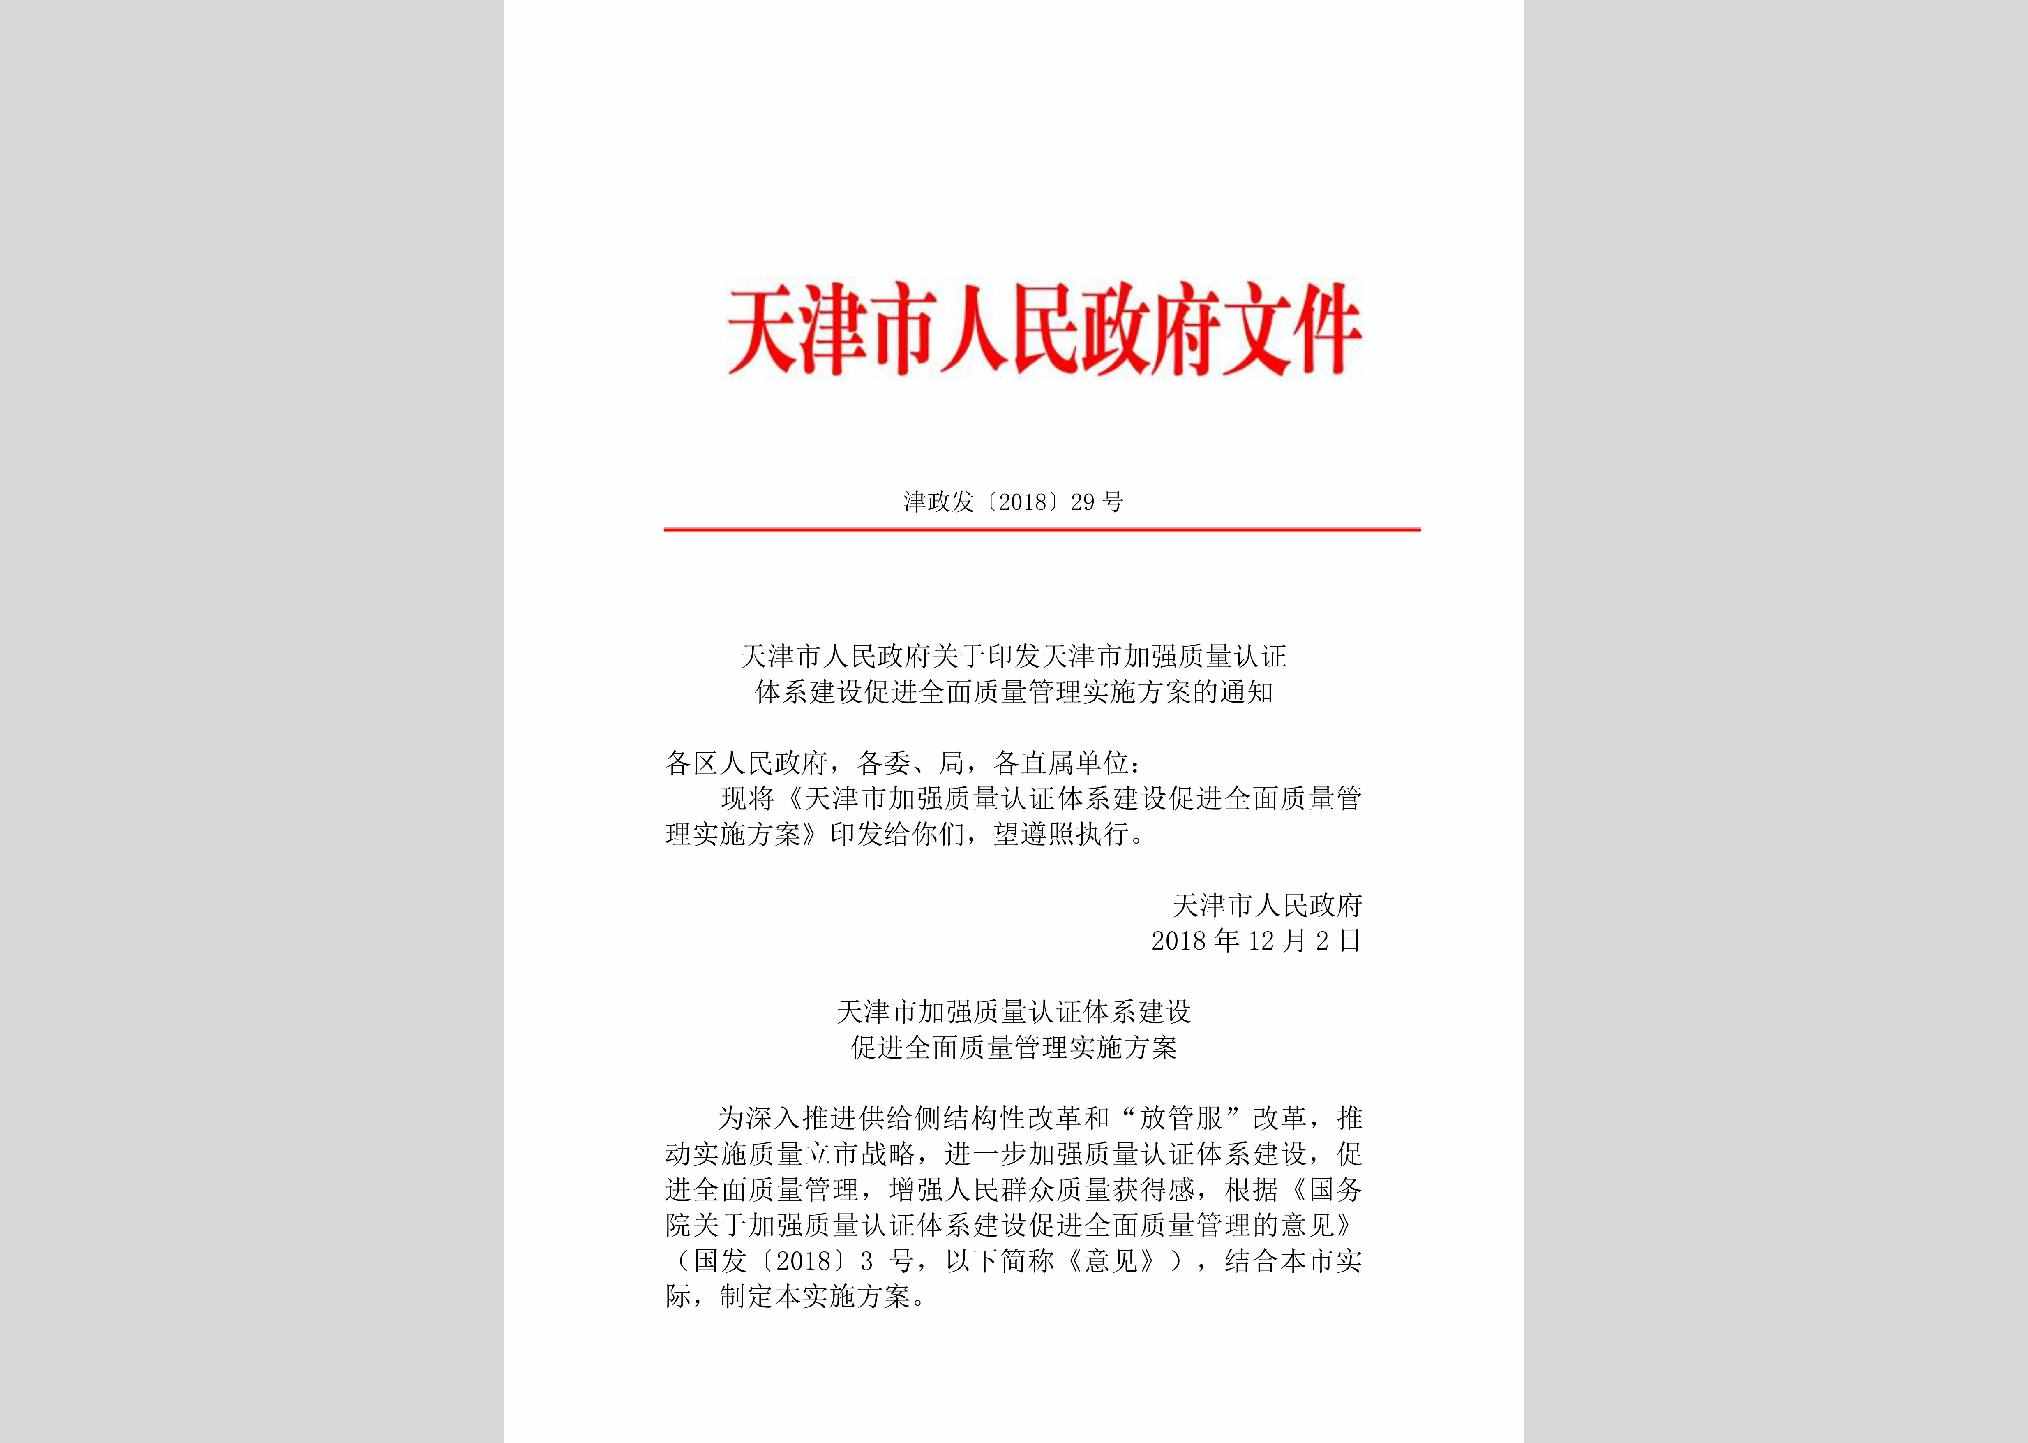 津政发[2018]29号：天津市人民政府关于印发天津市加强质量认证体系建设促进全面质量管理实施方案的通知